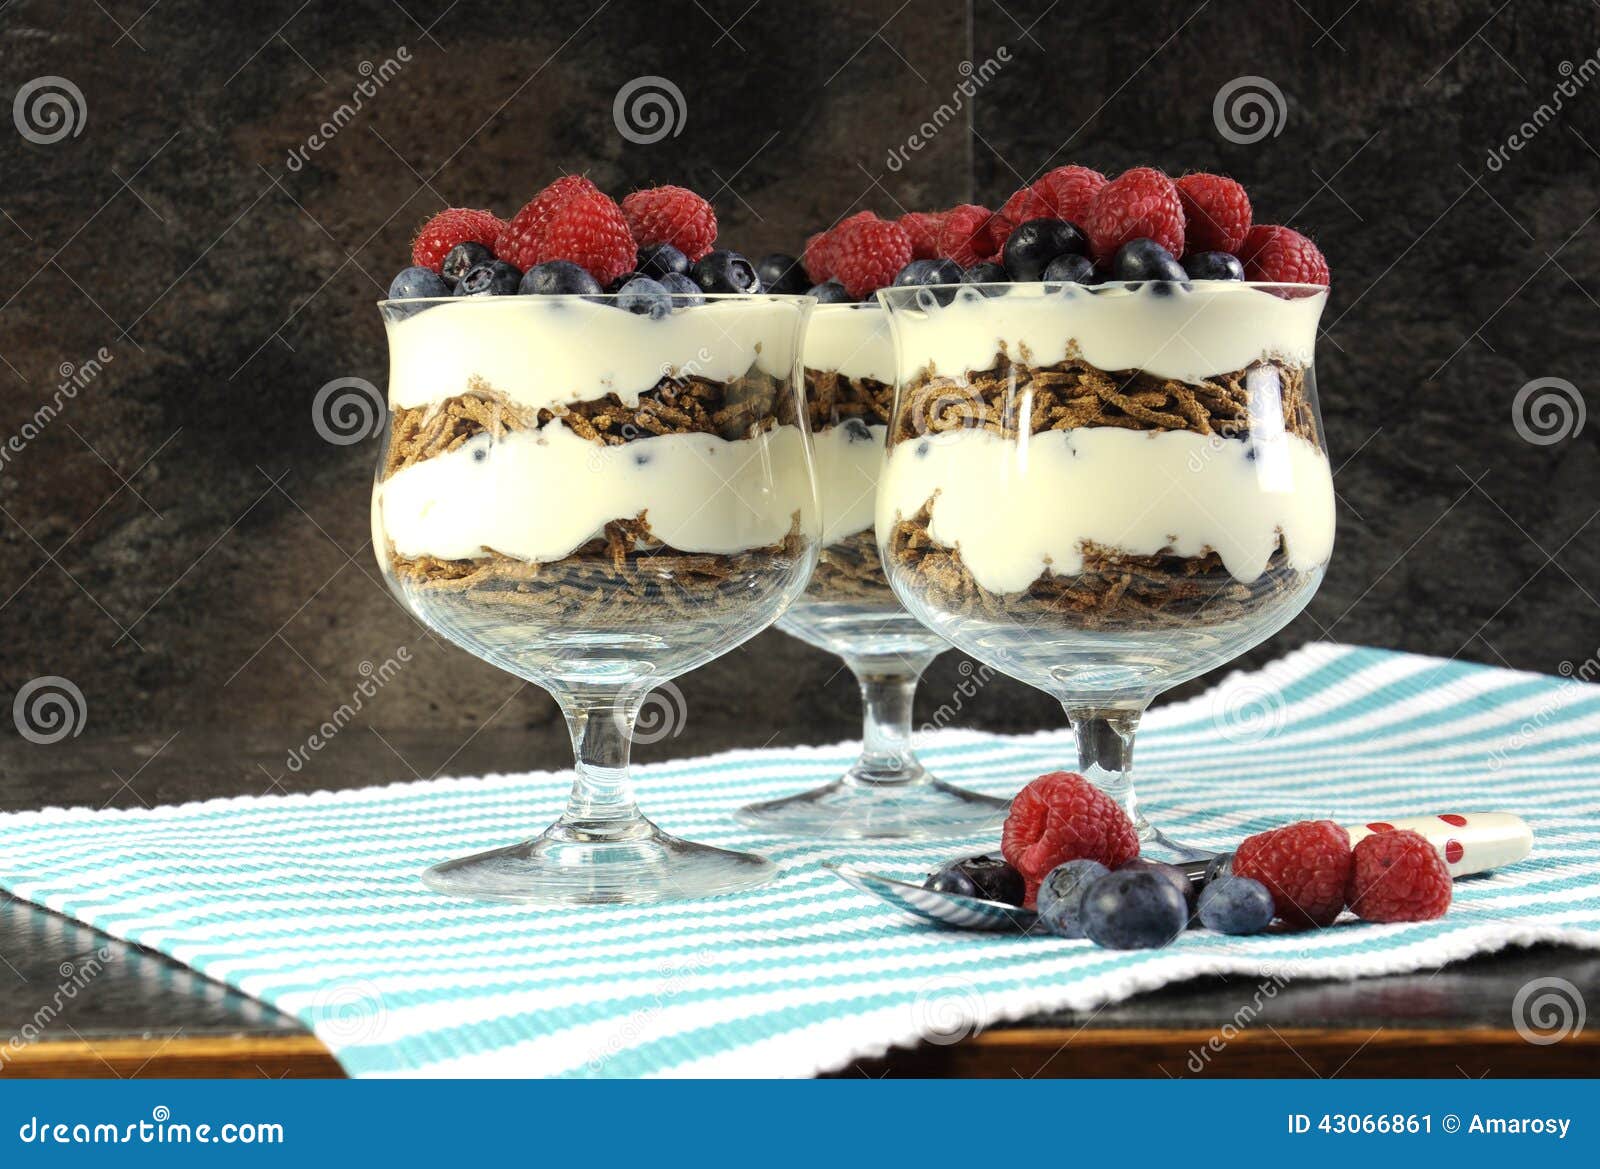 healthy diet high dietary fiber breakfast with bran cereal, yoghurt and berries sundaes